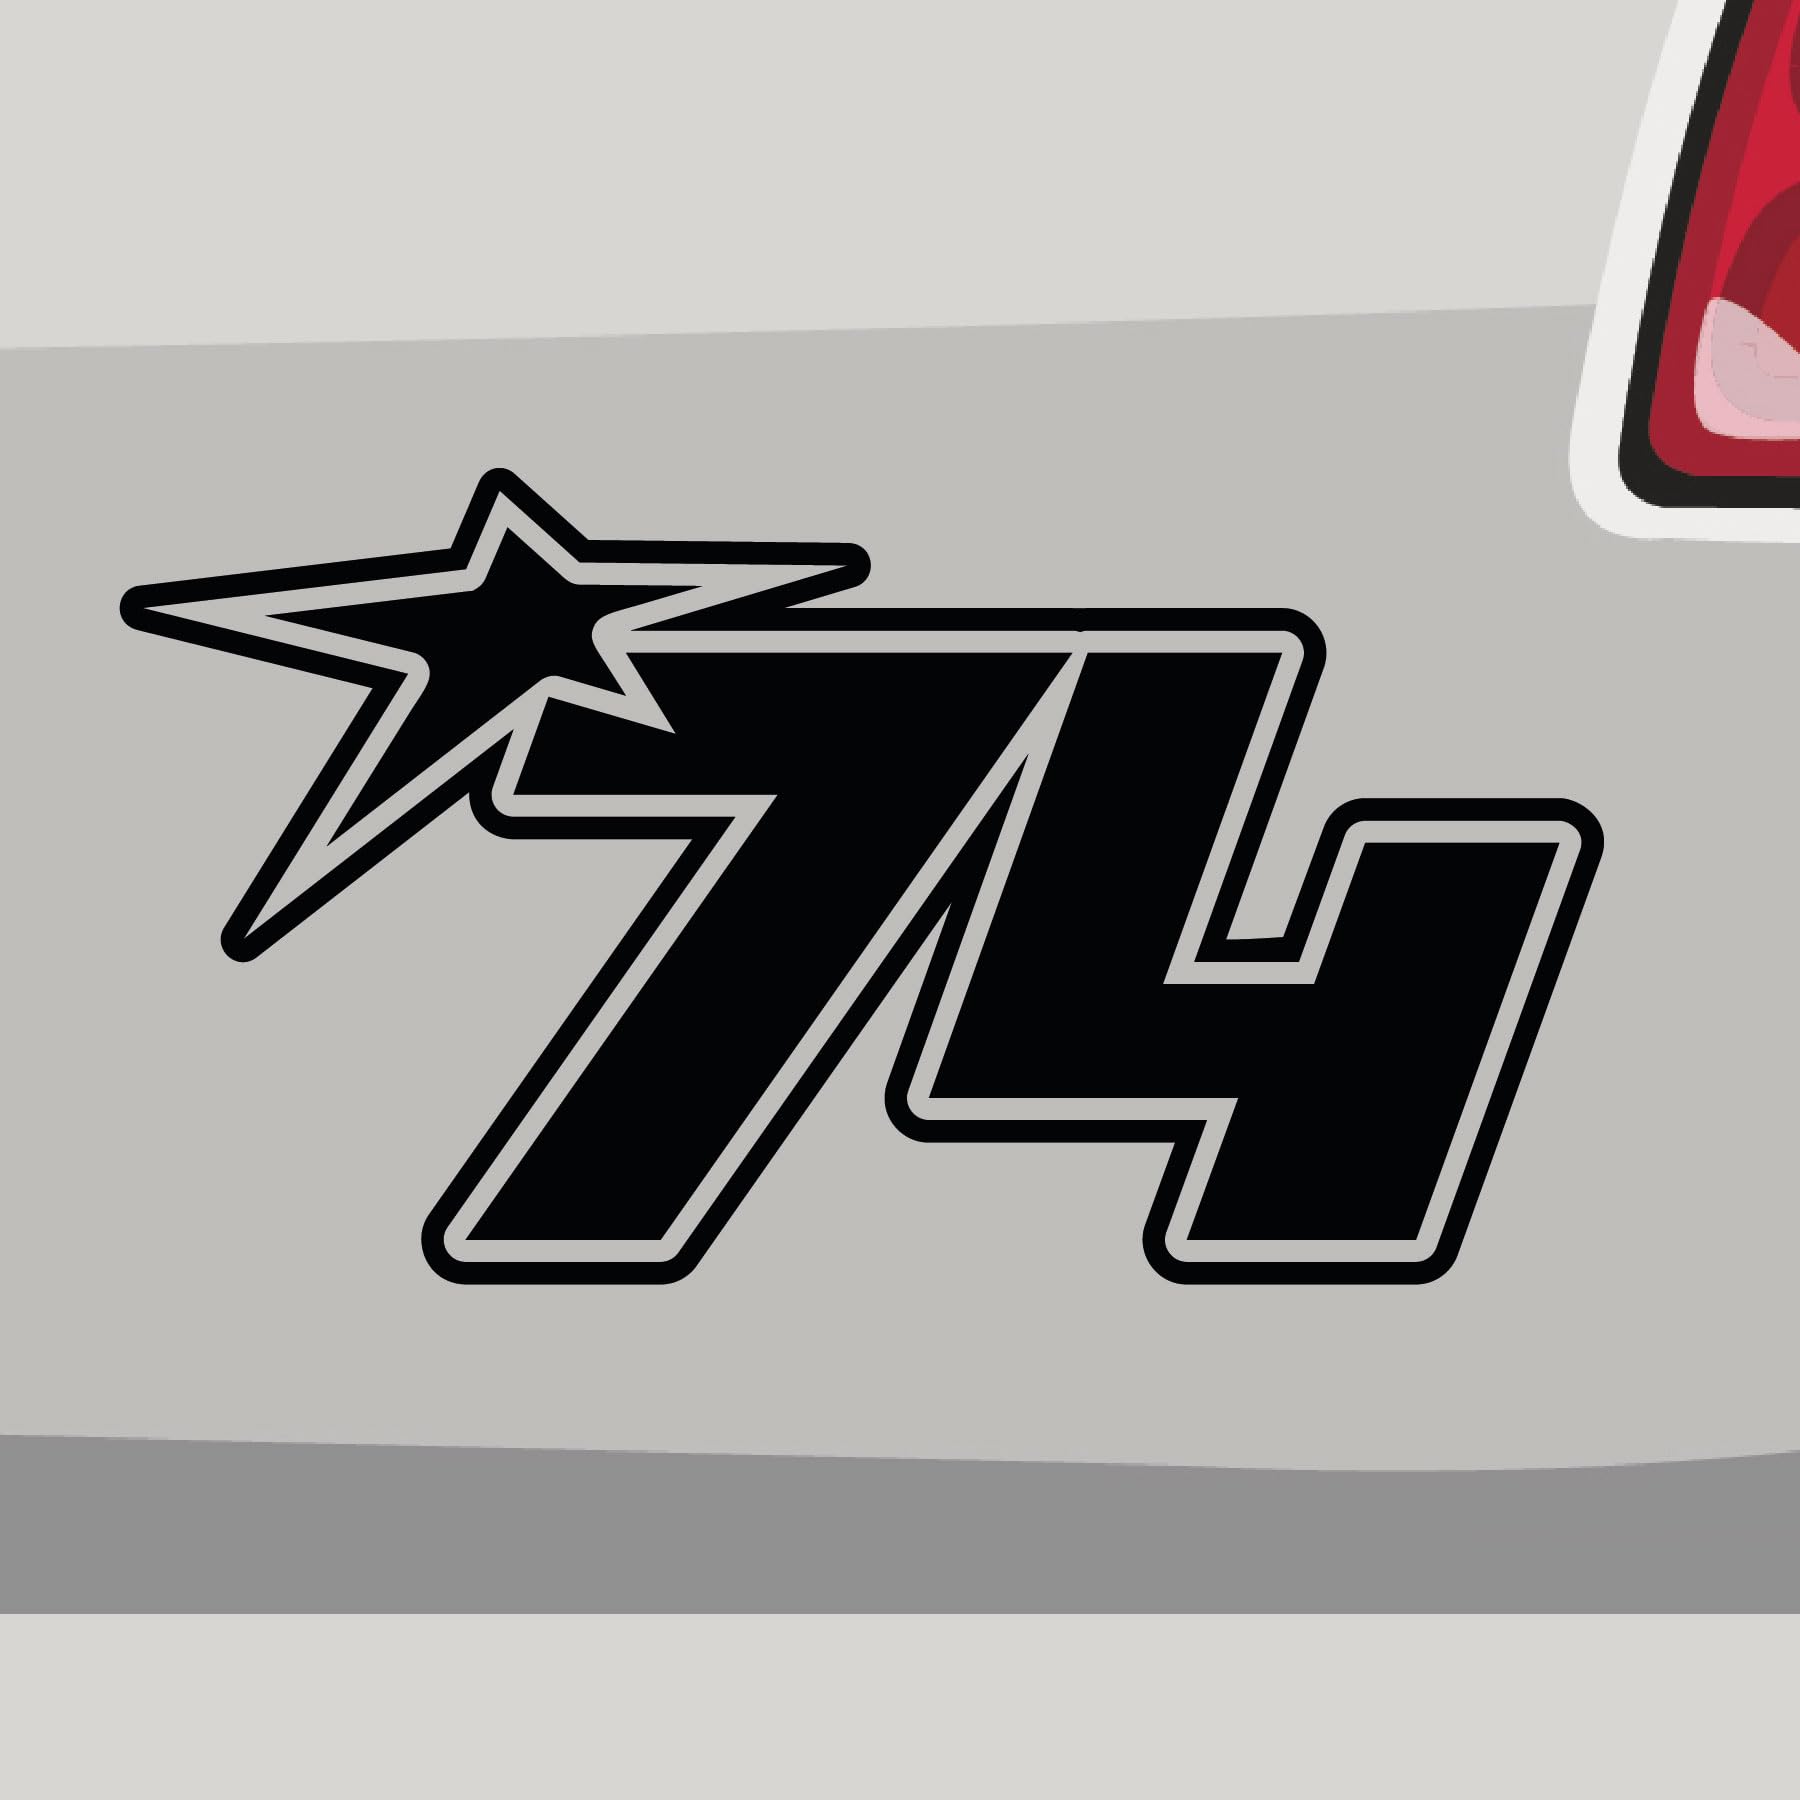 Stickerfreaks Startnummer 74 Aufkleber Number Sticker Race Star Stern Auto Bike Kleber Aufkleber Größe: 45x25cm (XXL) | Farbe: 70-schwarz | Number Sticker Kleber Deko Tuning Startnummer von Stickerfreaks